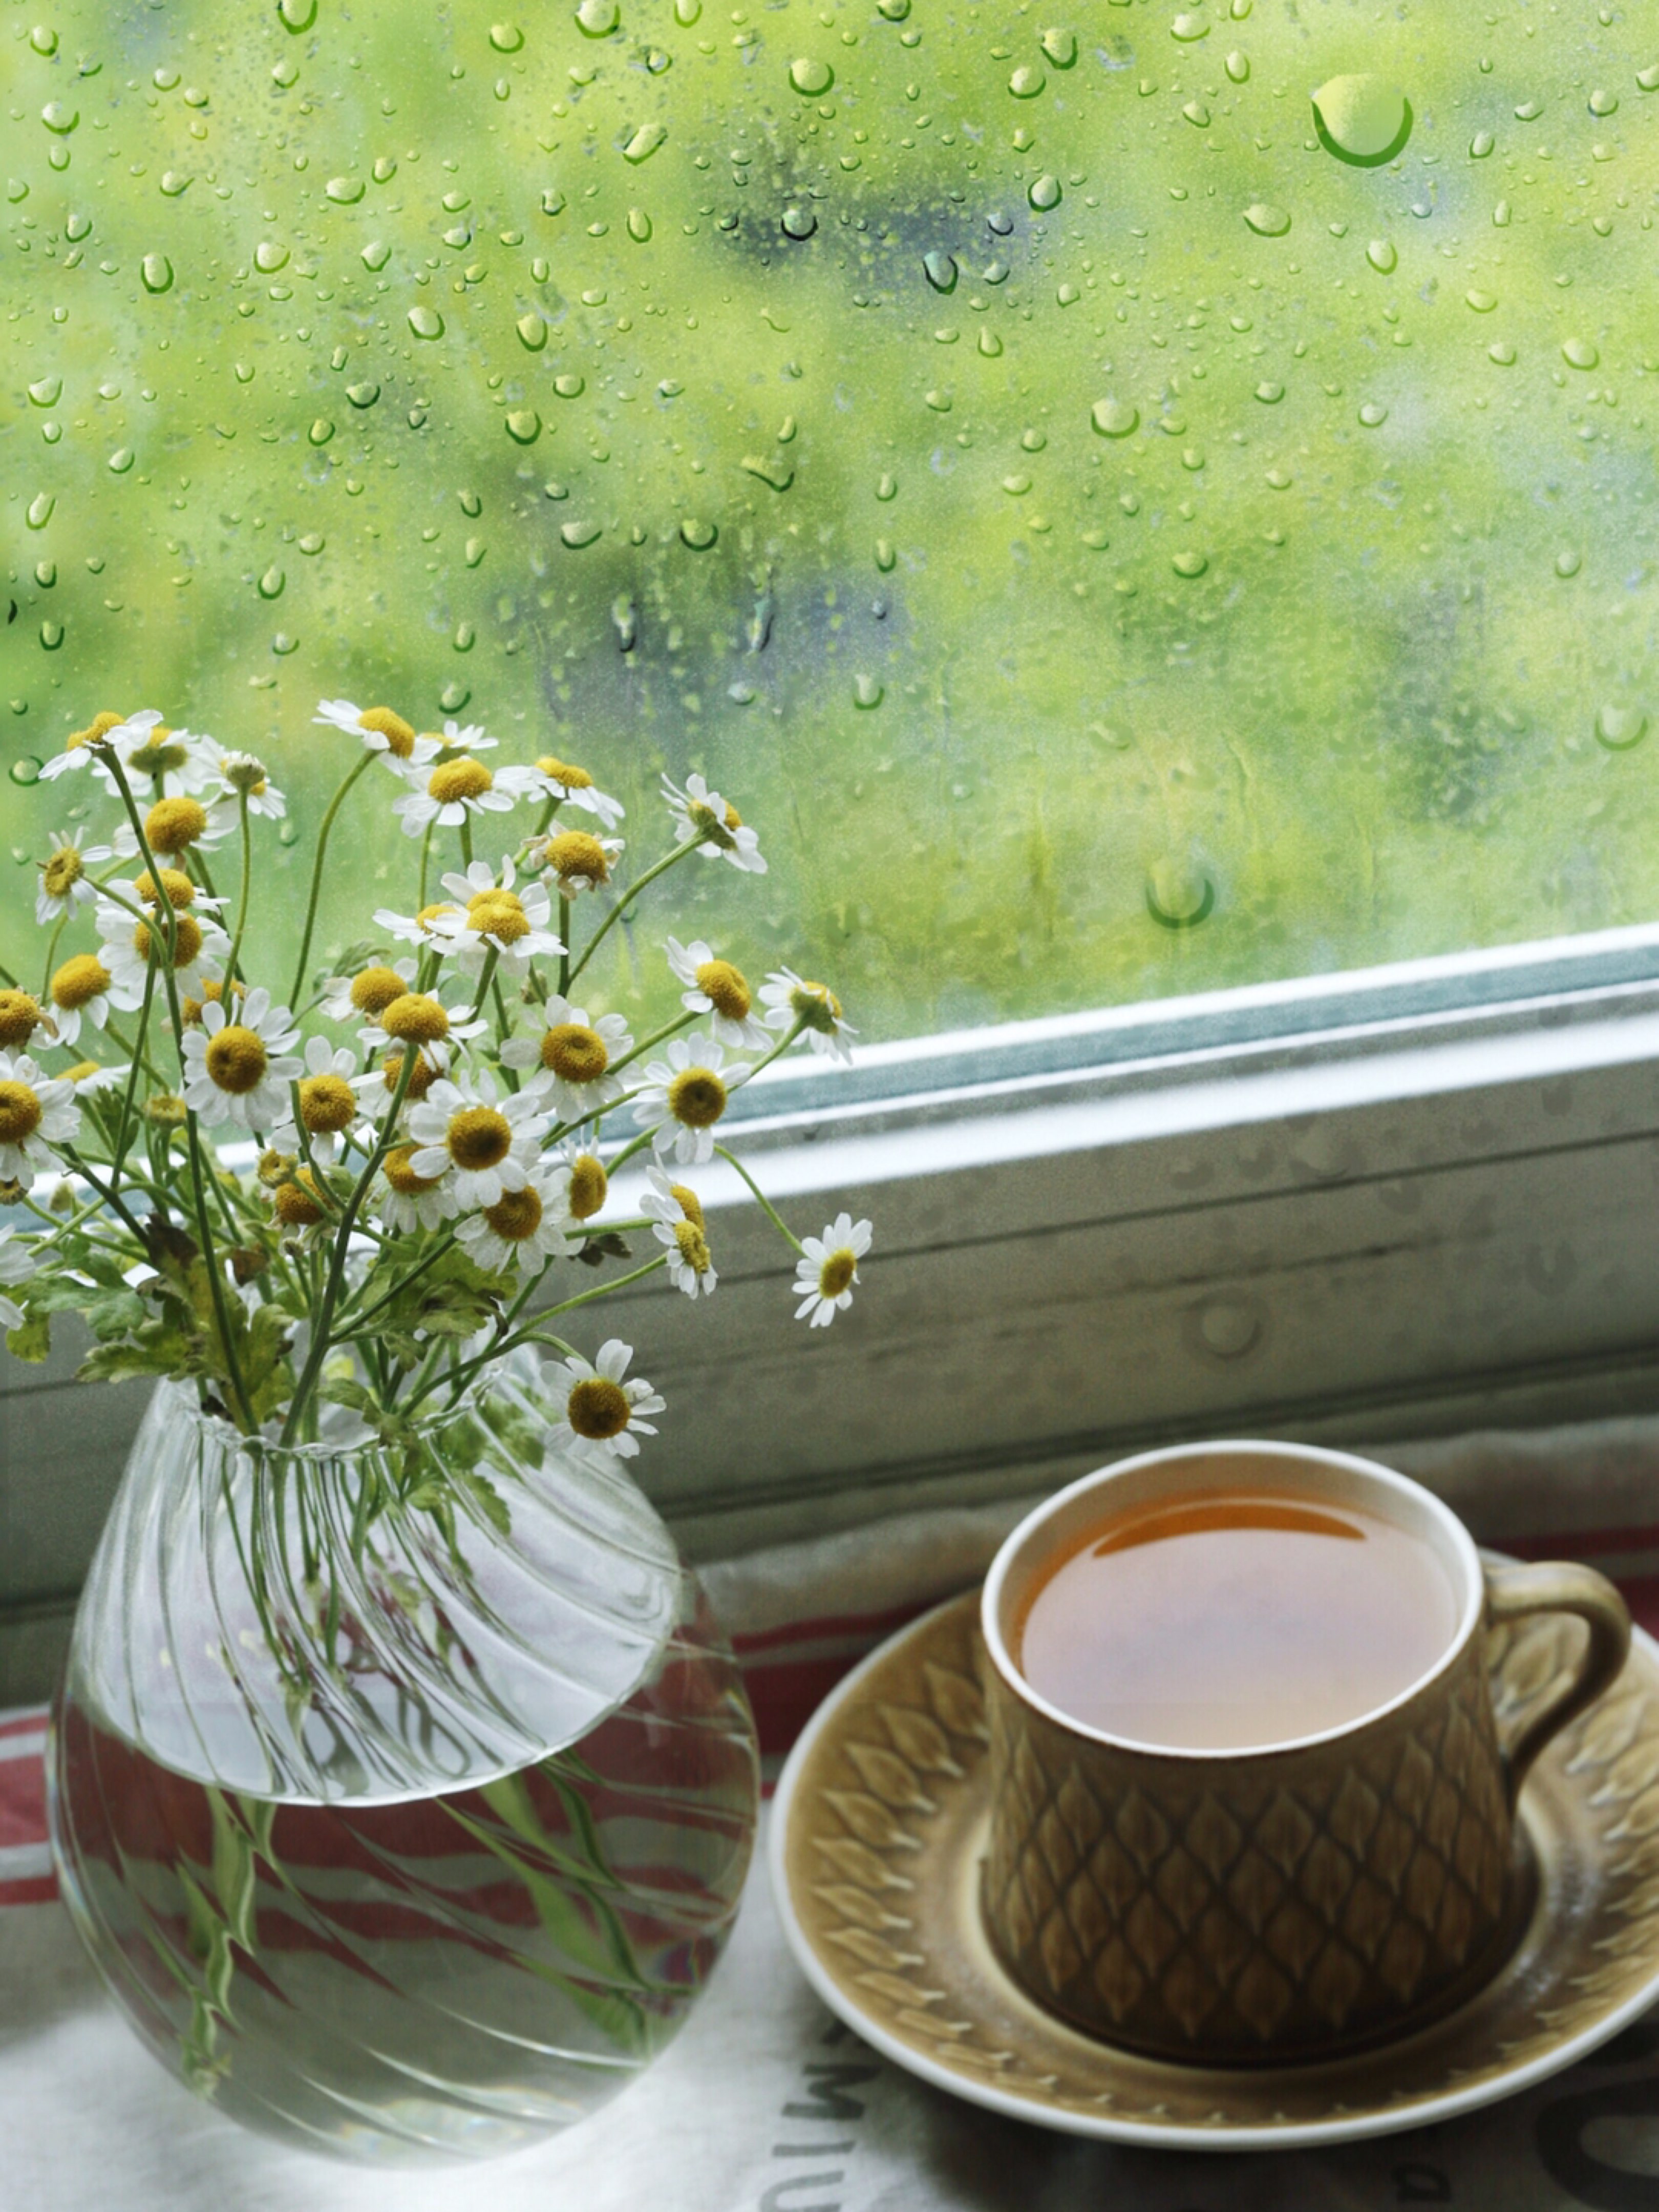 下雨天适合靠着窗台静静地发呆,听雨